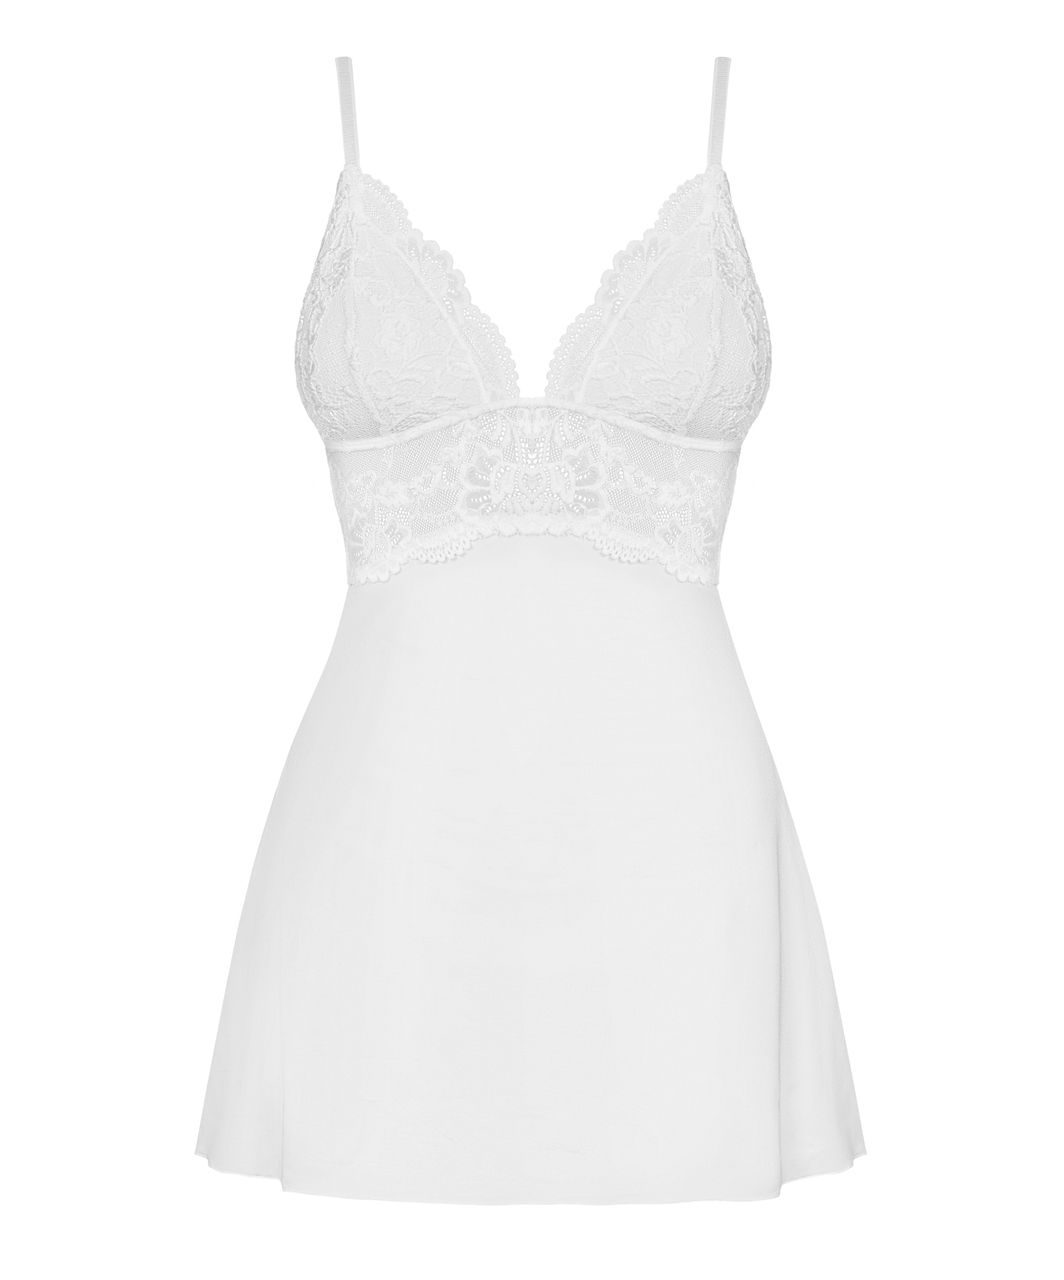 Obsessive valge babydoll-kleit polsterdatud korvidega